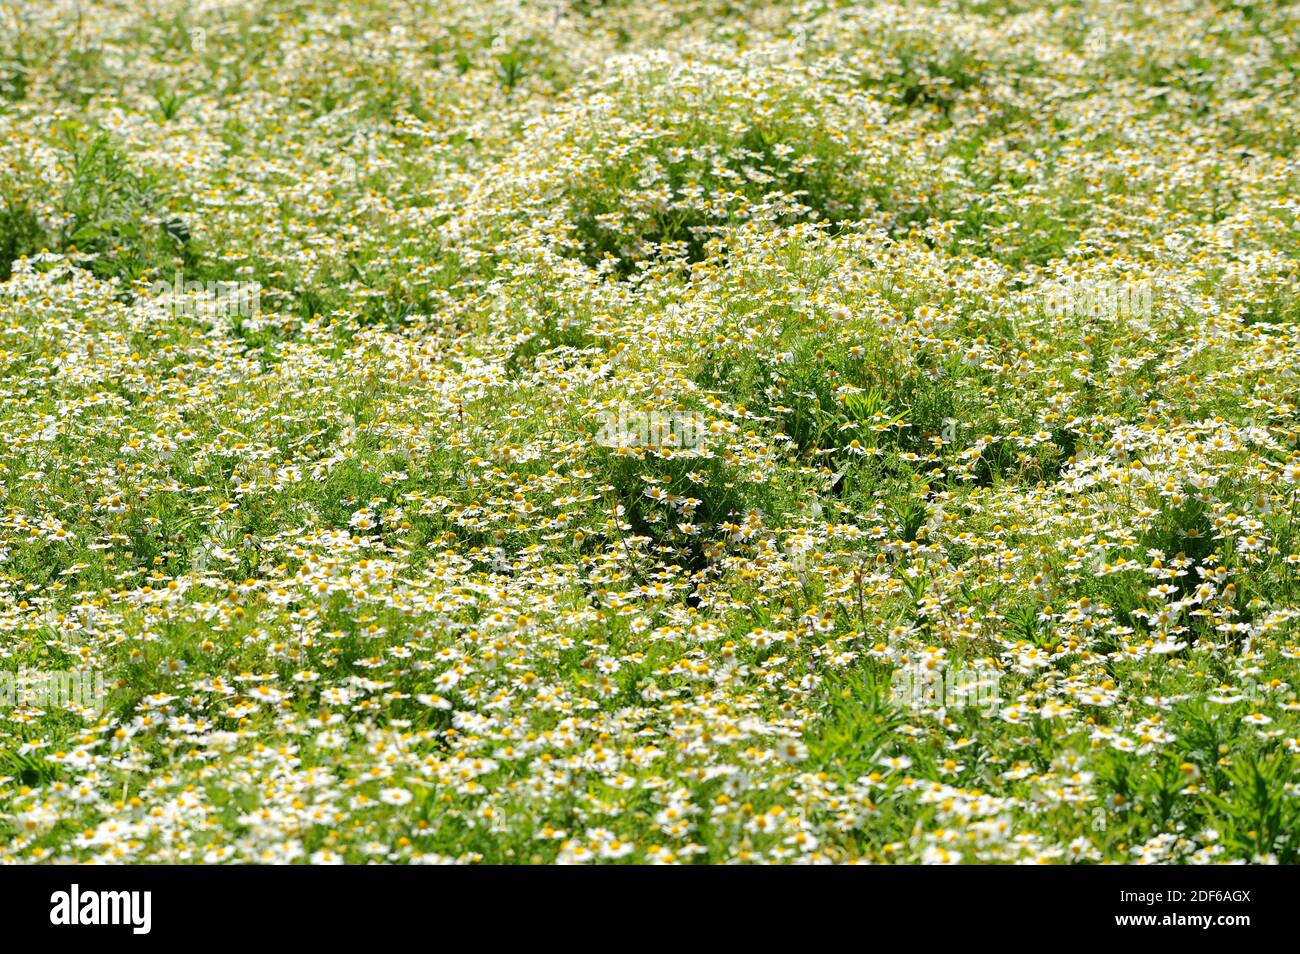 La camomilla di mais o la mayweed (Anthemis arvensis) è un'erba annuale originaria dell'Europa. Angiospermi. Asteraceae. Maiorca, Isole Baleari, Spagna. Foto Stock